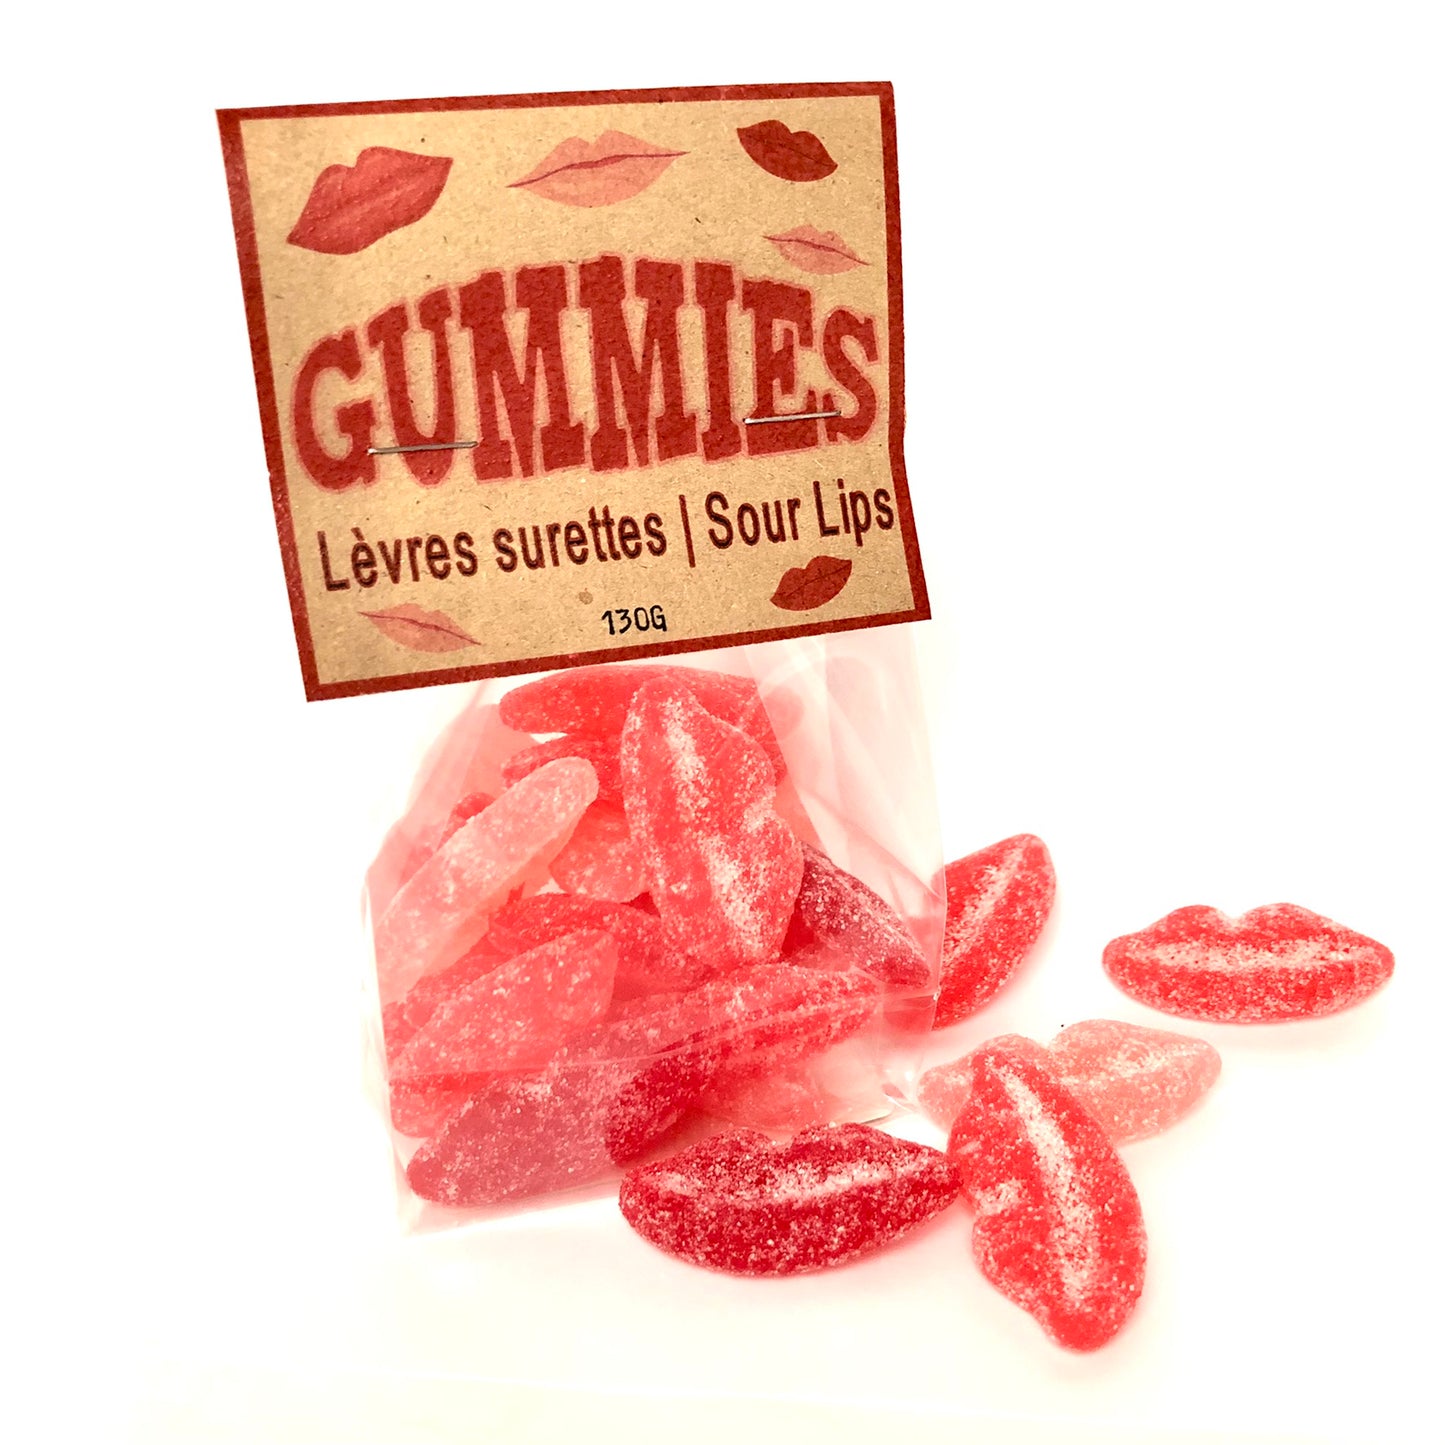 Gummies _ Lèvres surettes